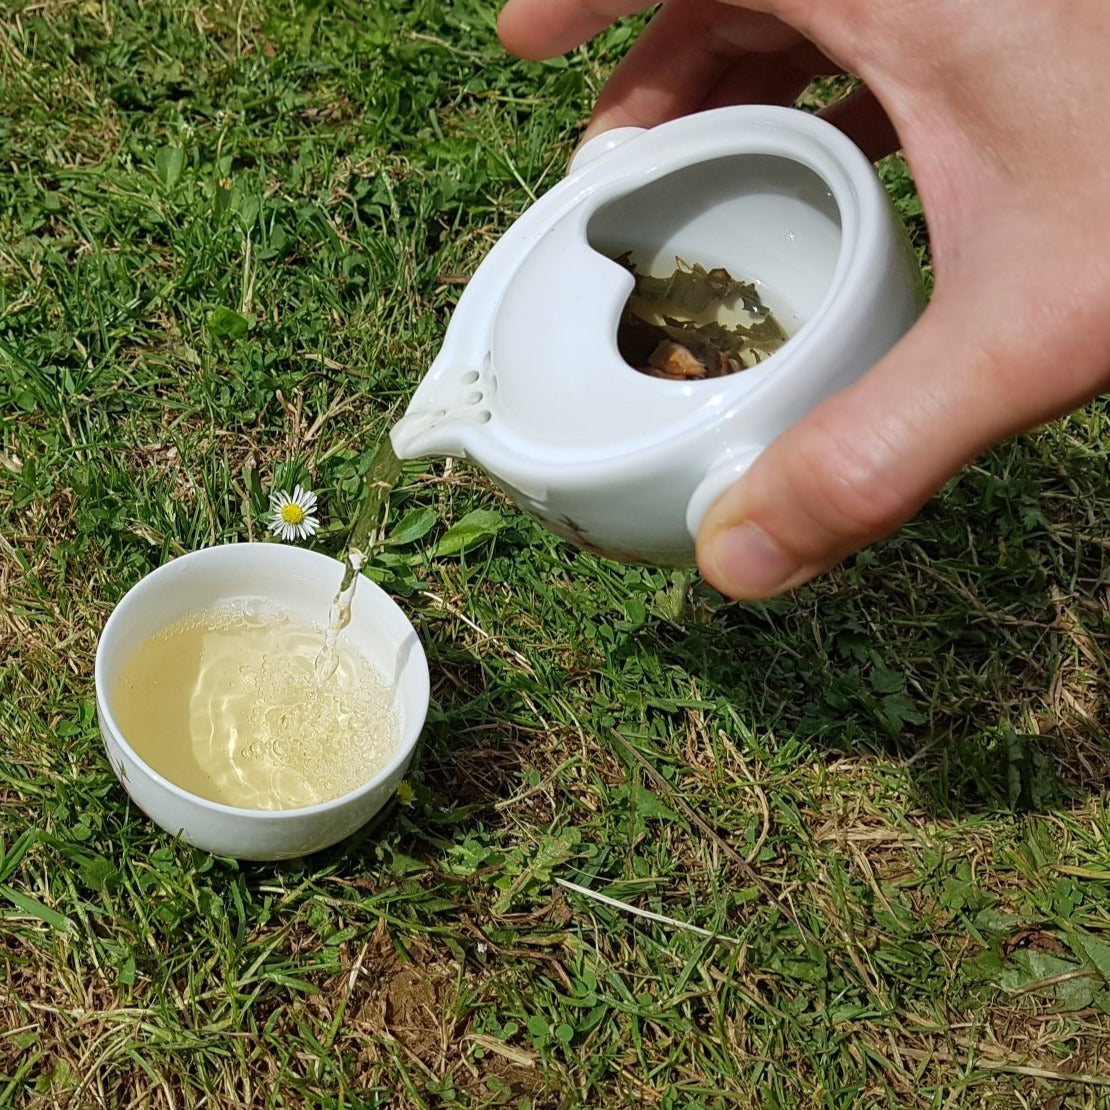 Mažas individualus porcelianinis arbatinukas 180 ml